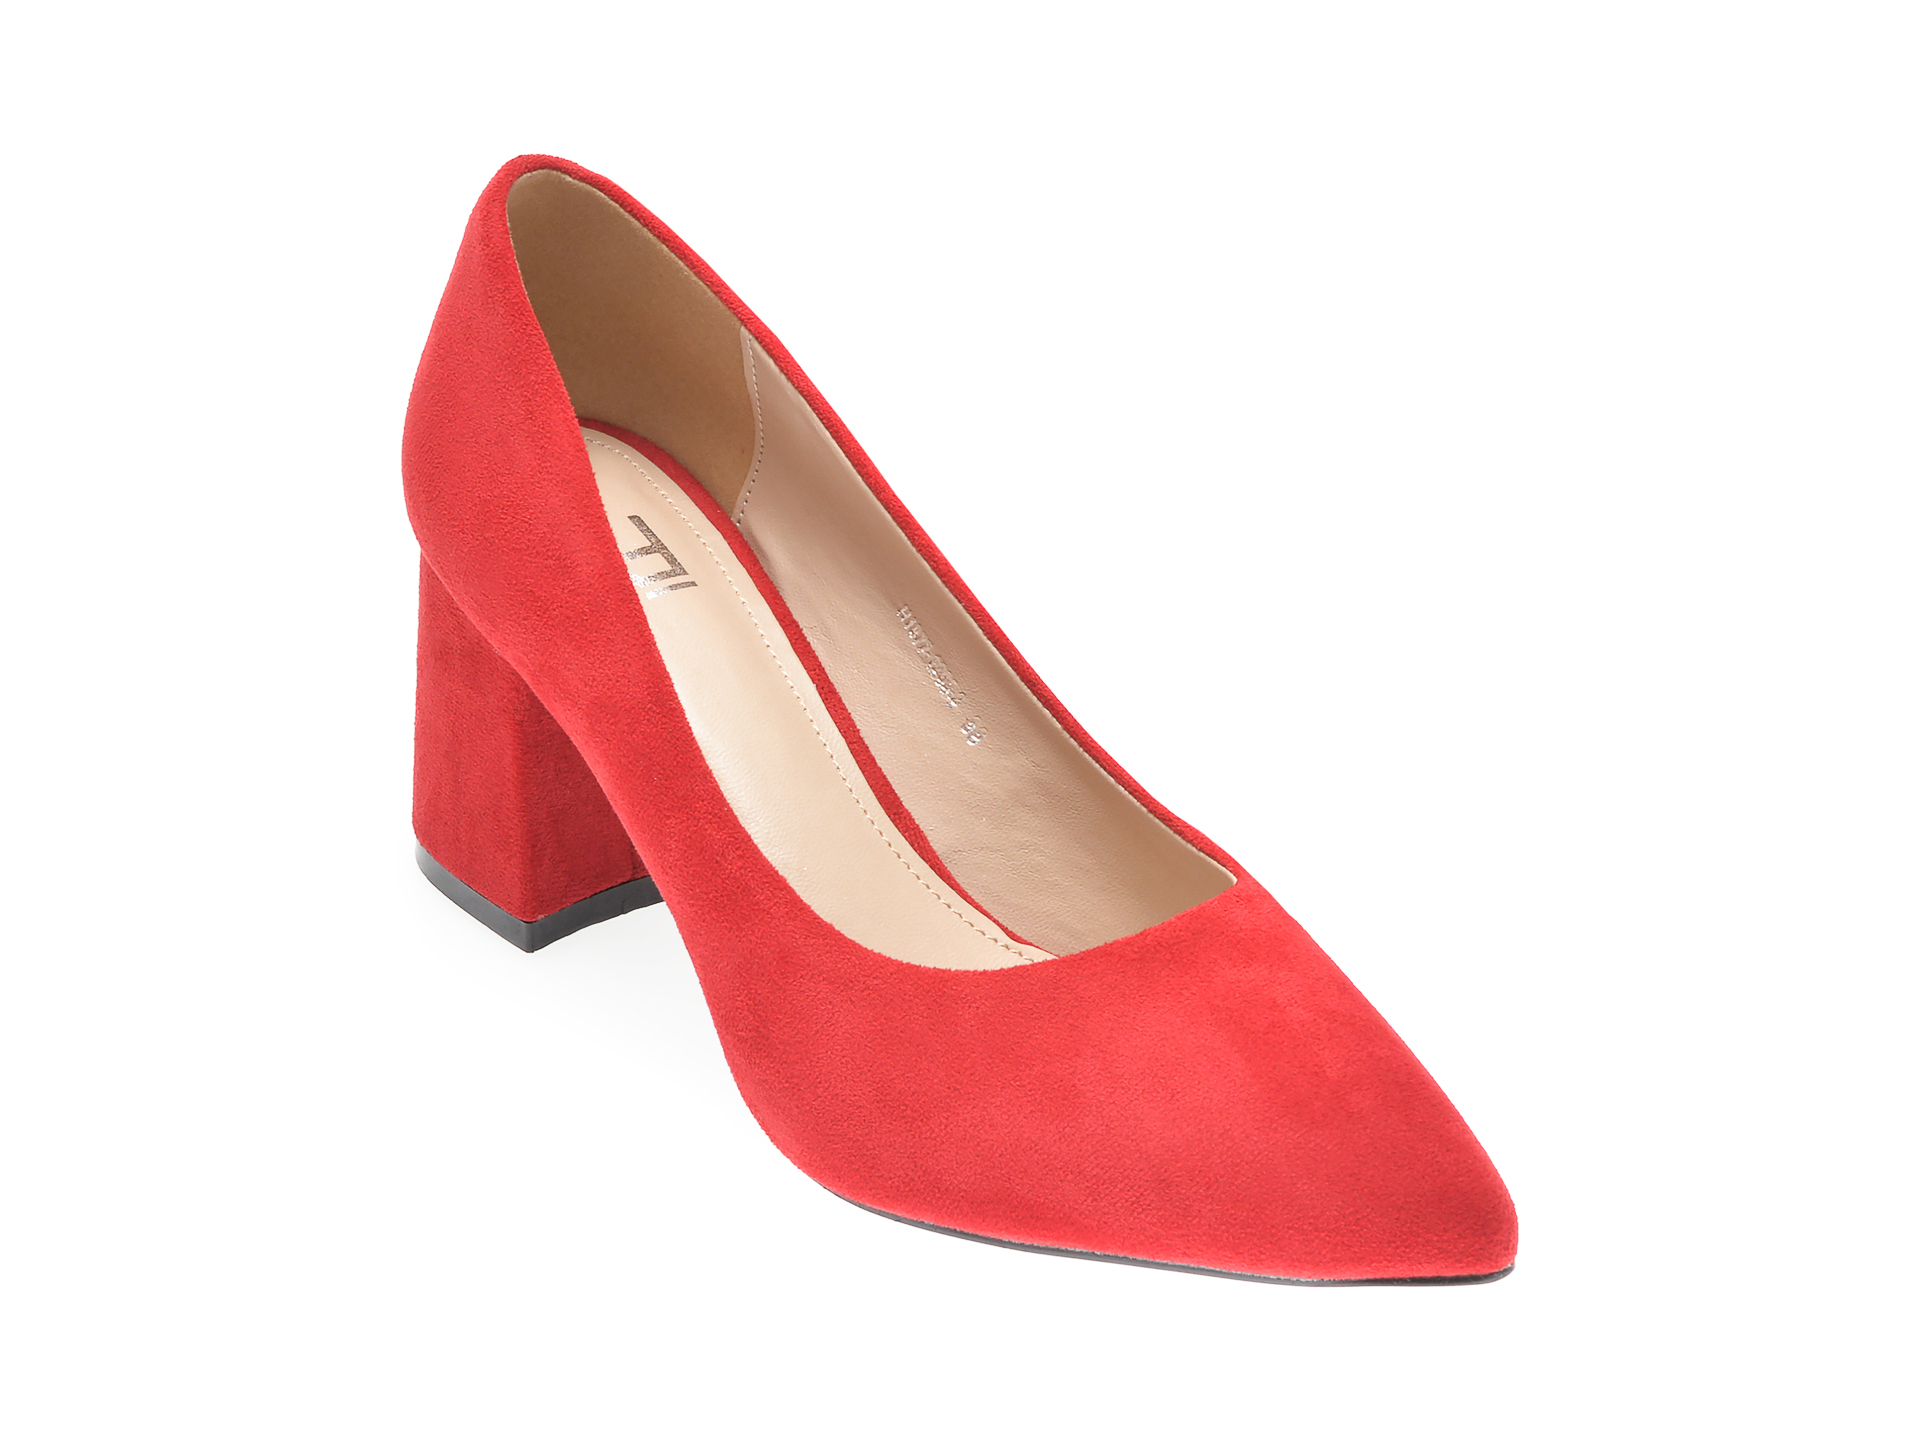 Pantofi RIO FIORE rosii, H1877, din piele ecologica